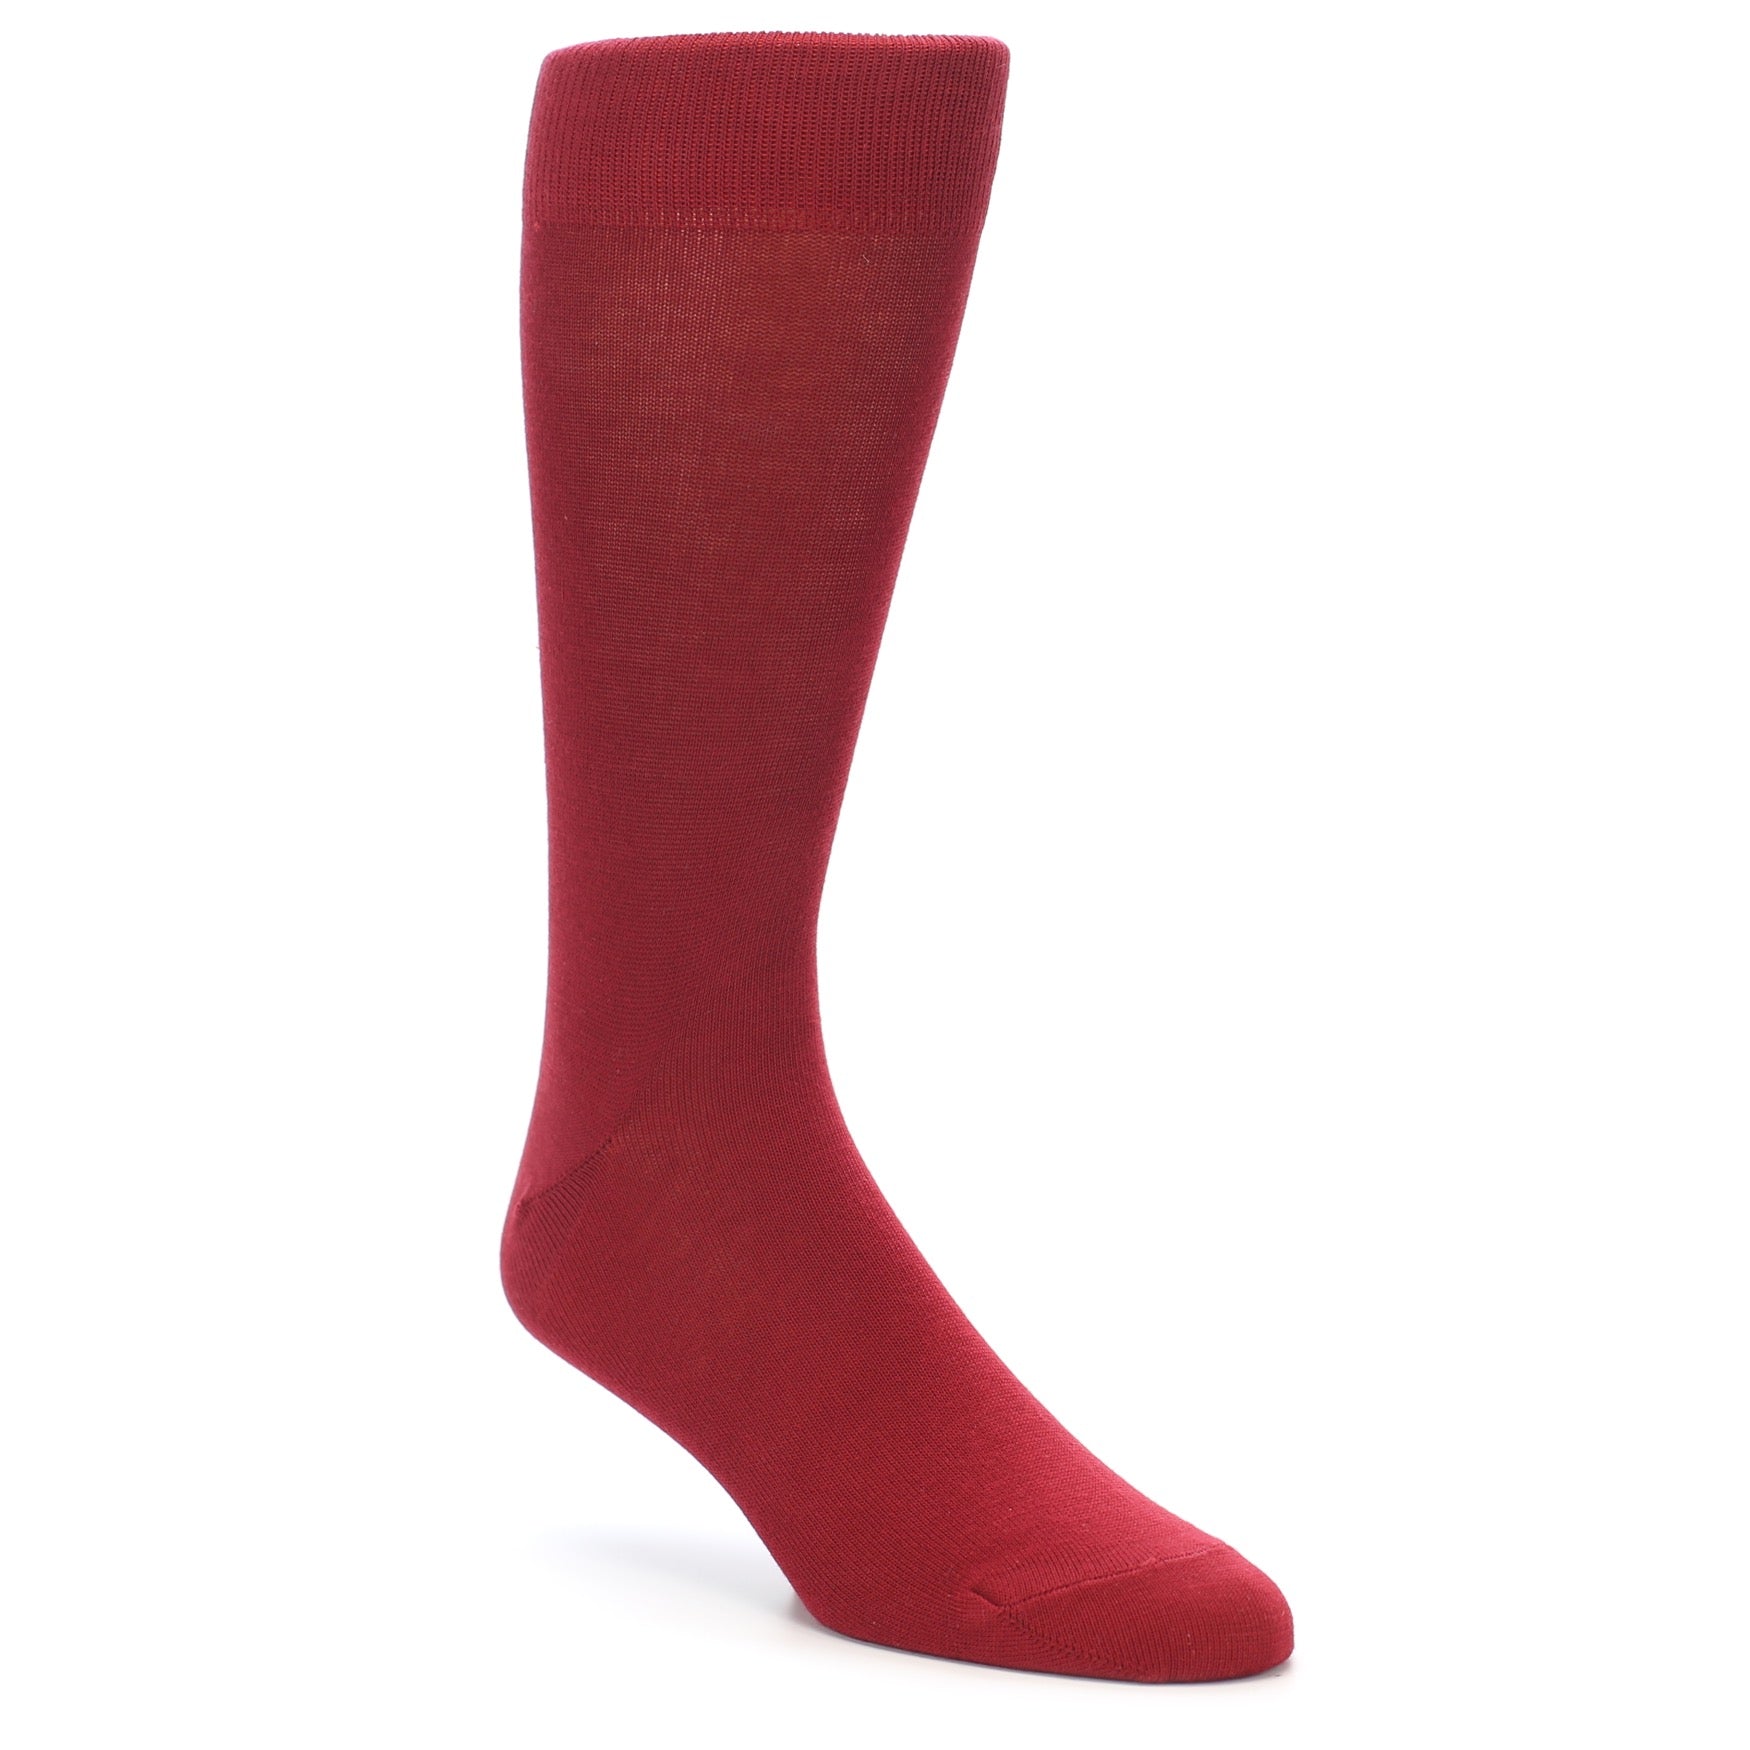 Apple Red Solid Color Men's Dress Socks